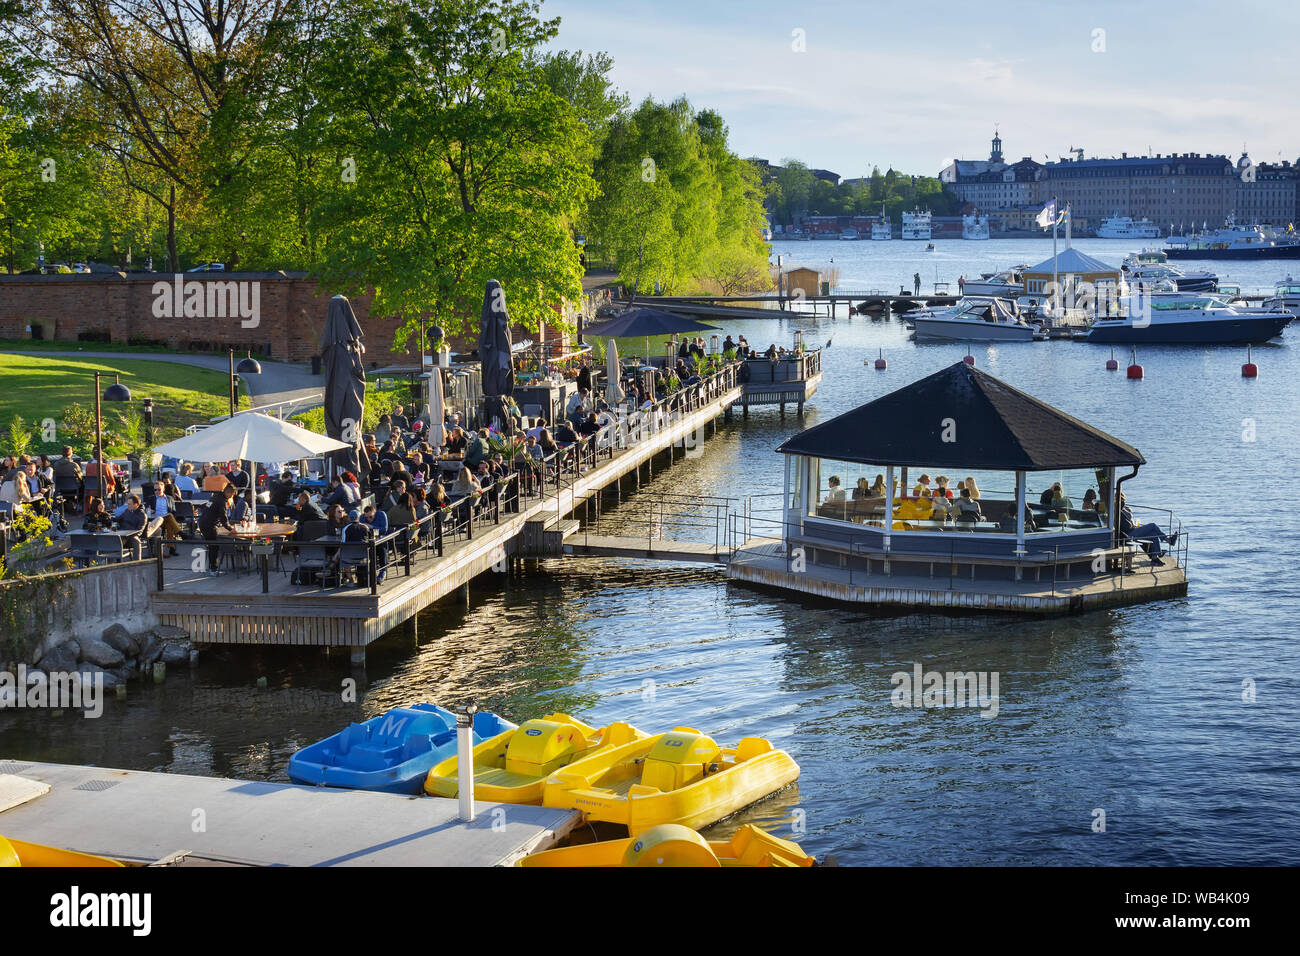 Quais flottants bondés, restaurants et cafés avec équipement de location de sports.Ostermalmstorg.Djurgarden-Skansen.Stockholm, Suède Banque D'Images